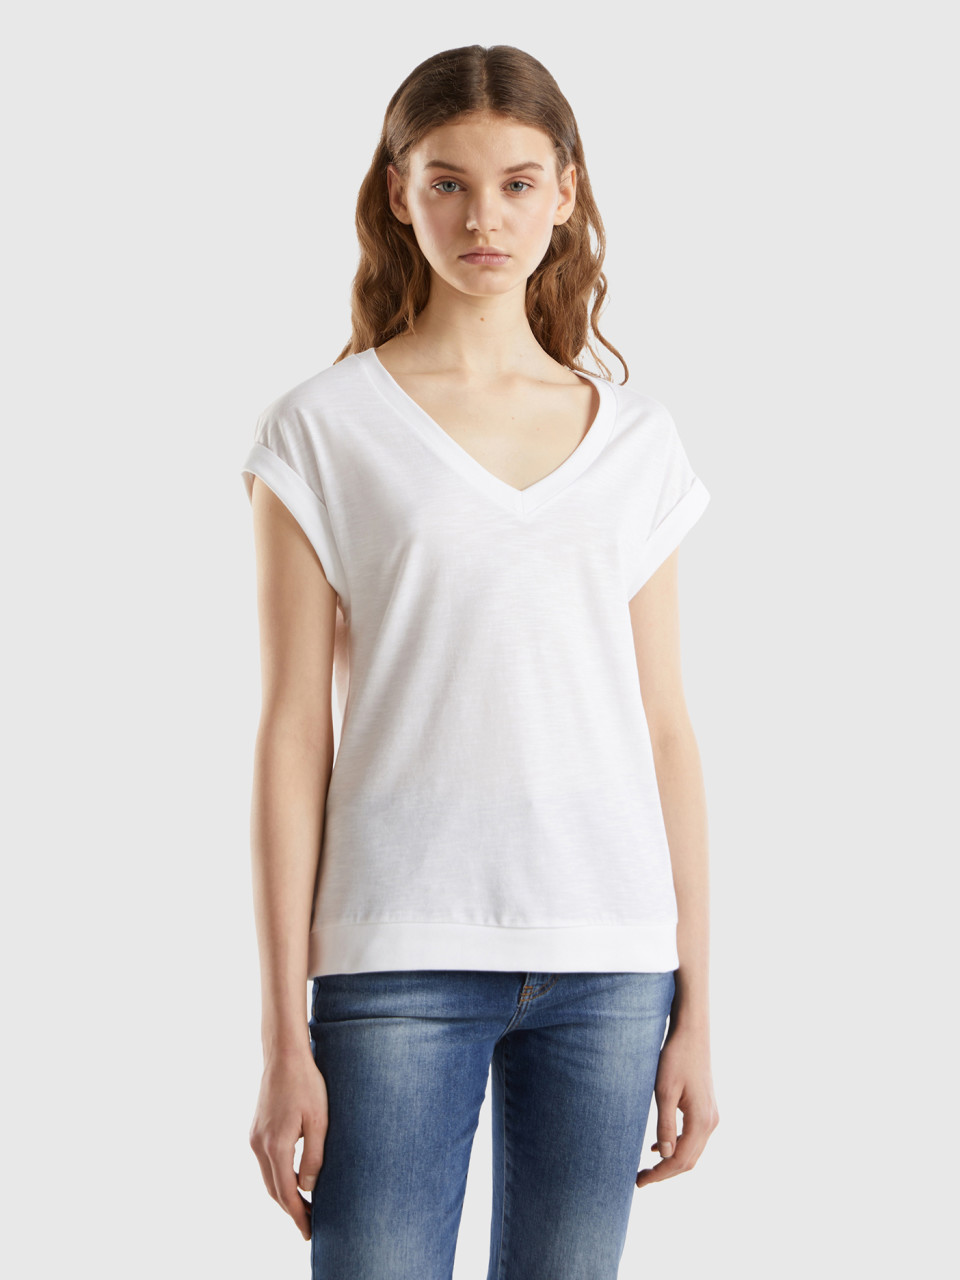 Benetton, T-shirt With V-neck, White, Women